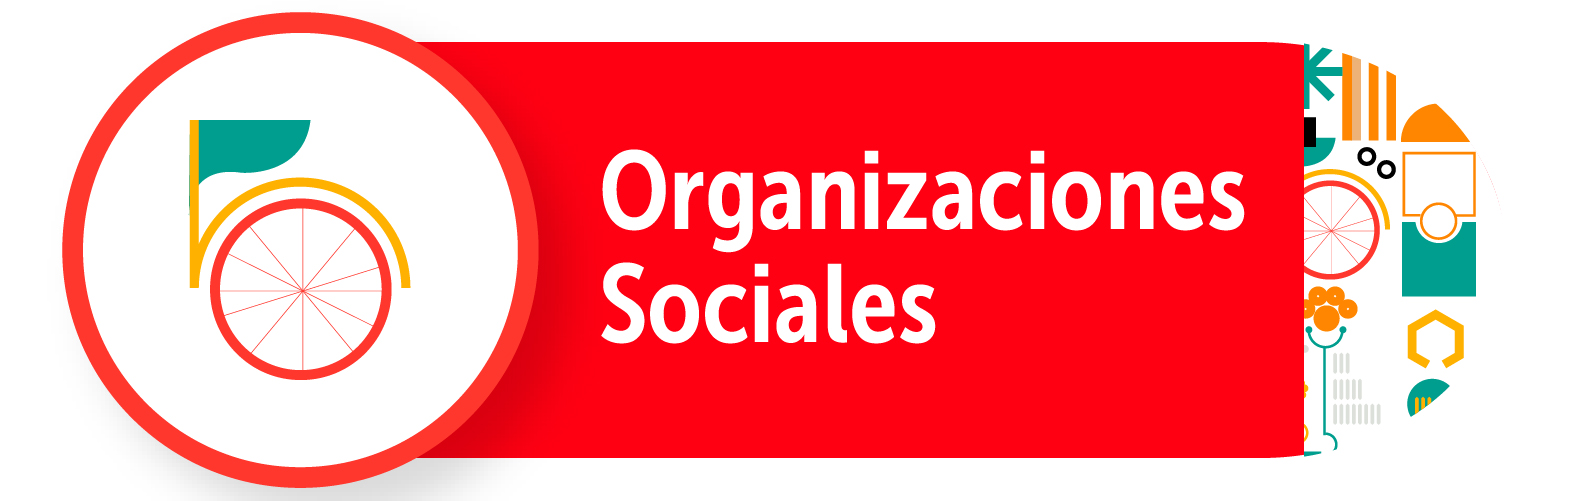 Organizaciones sociales